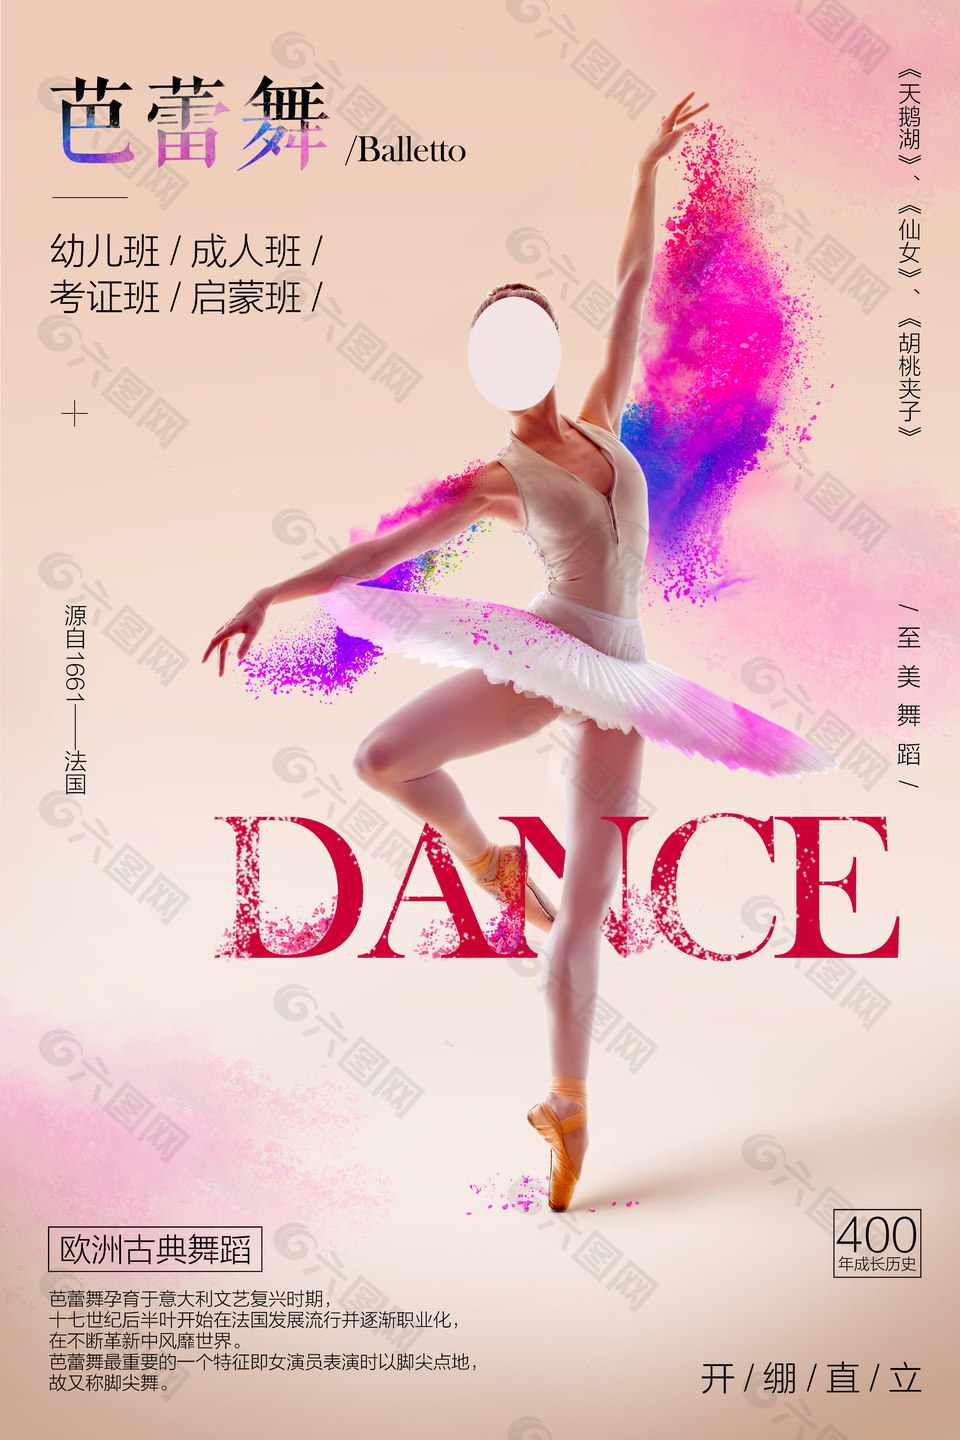 高端芭蕾舞创意宣传海报